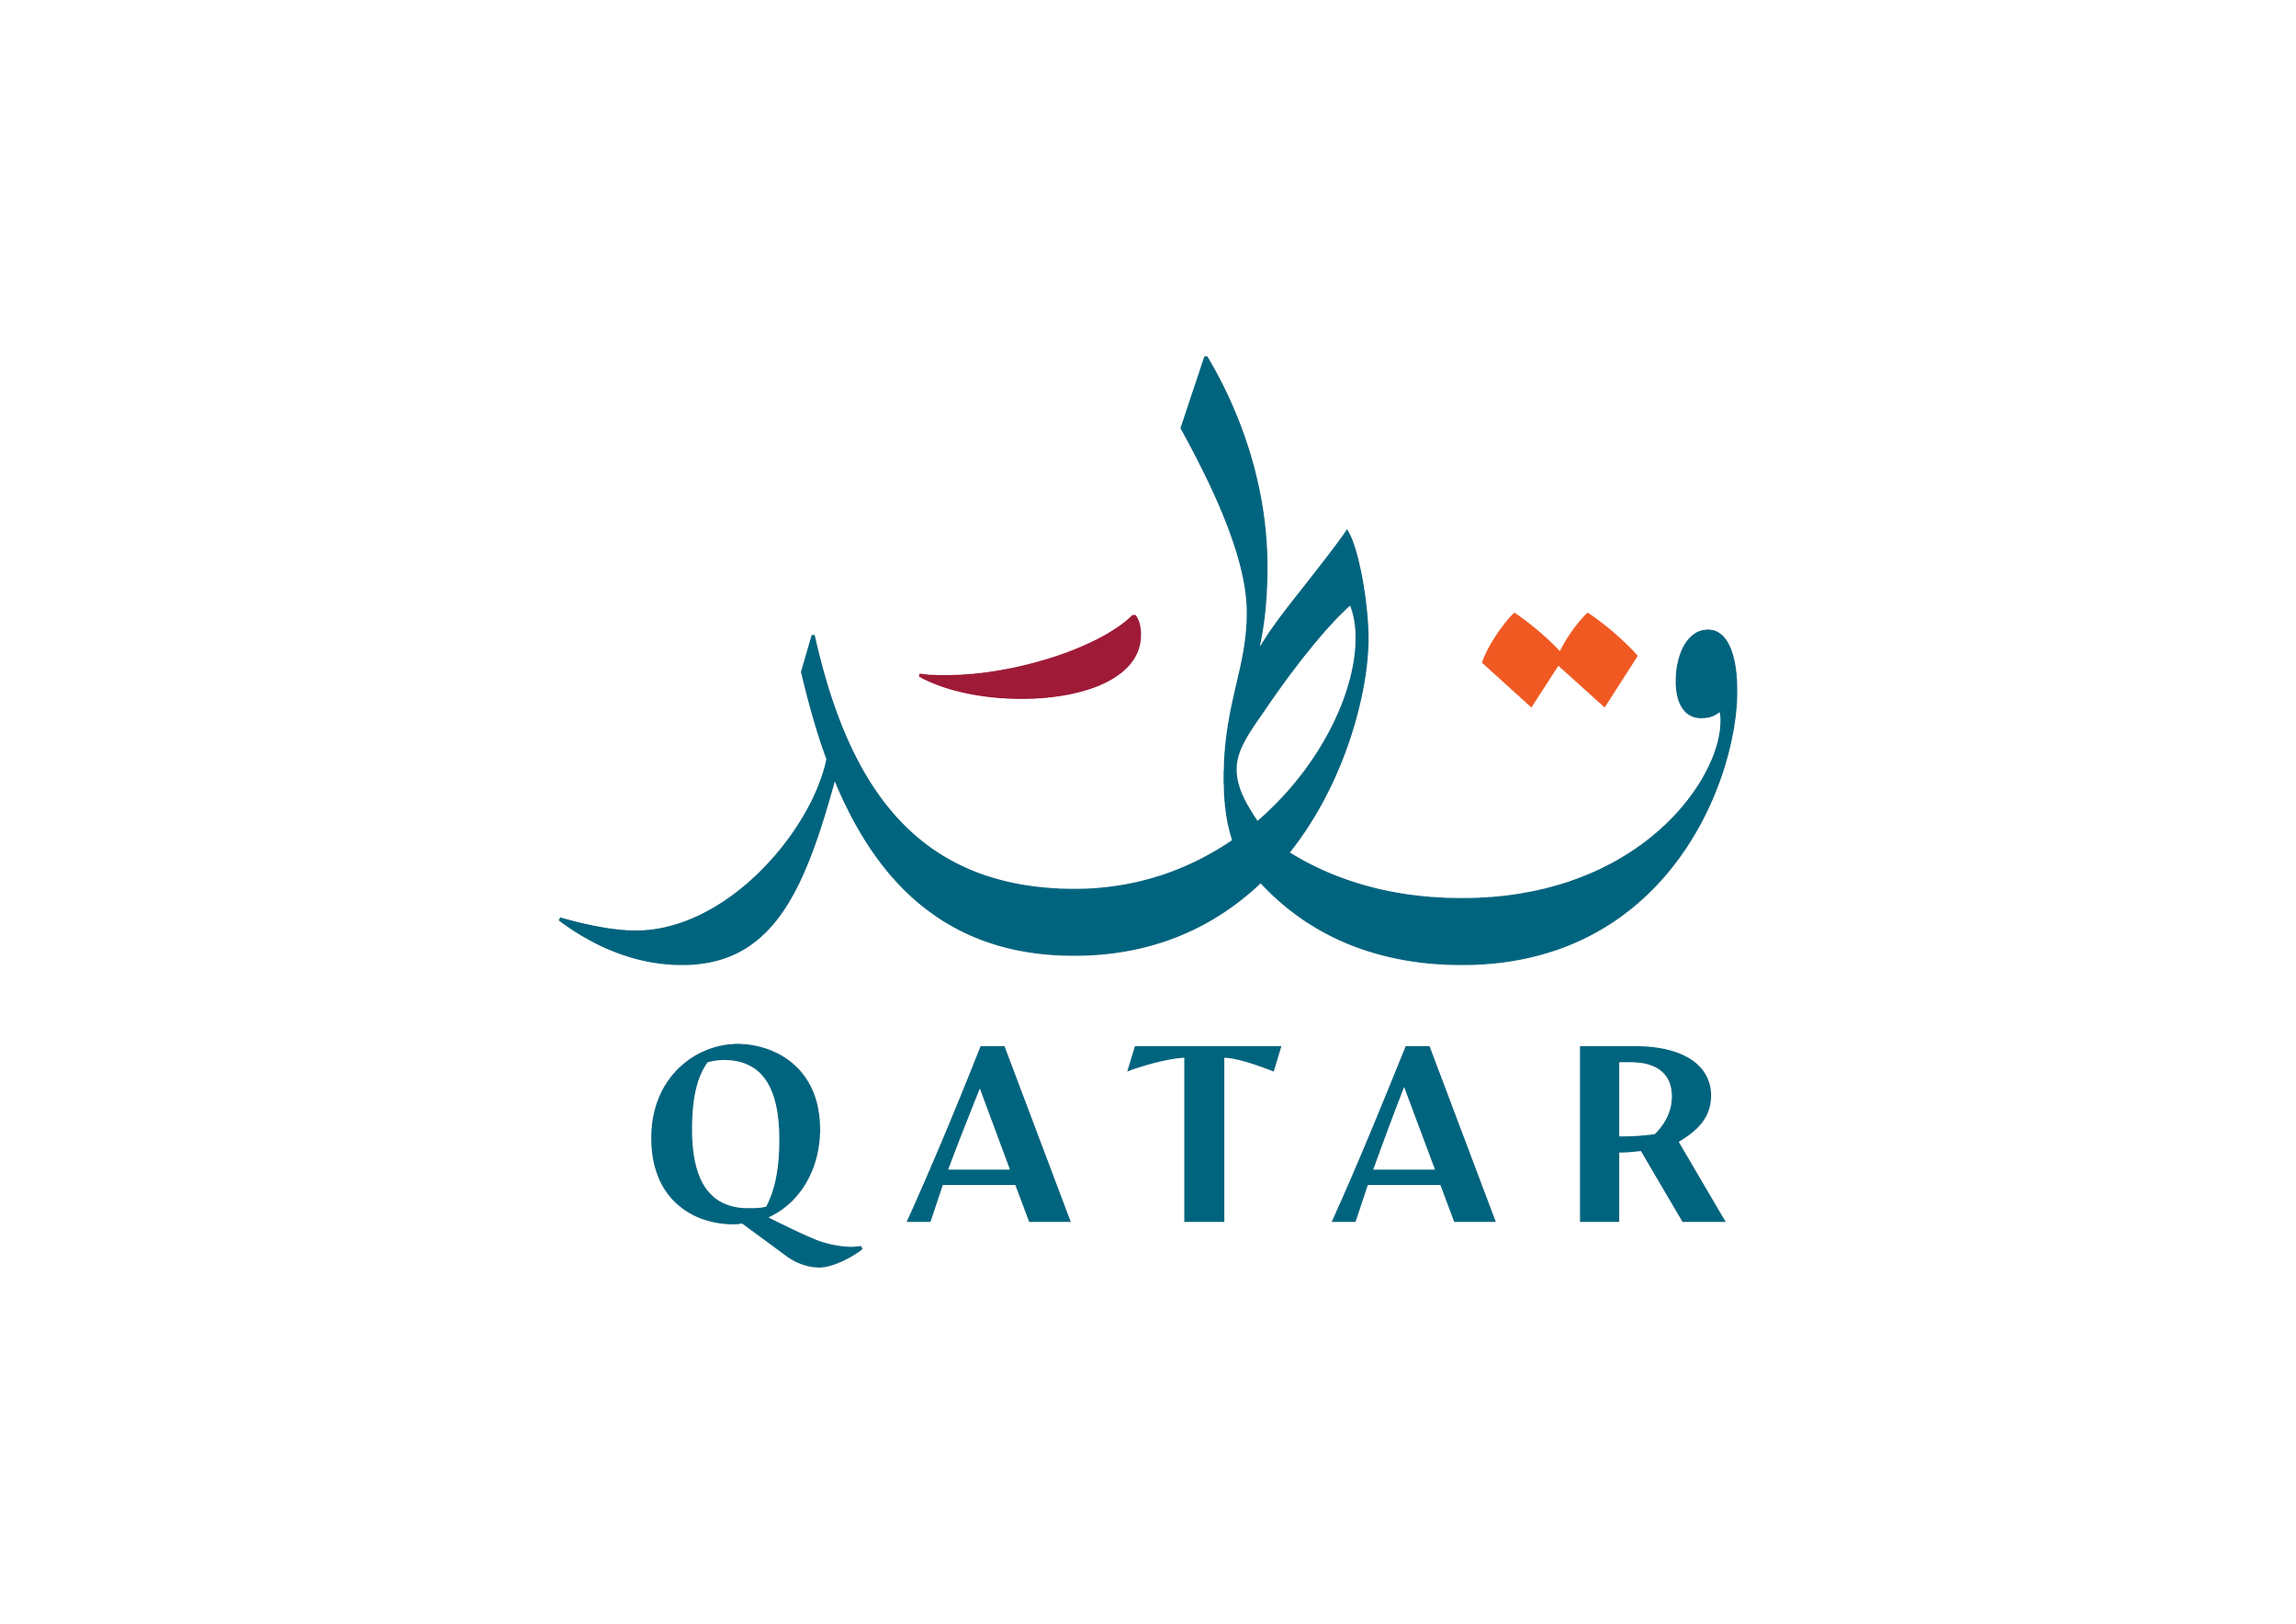 Qatar_Destination_Logo_CMYK.png